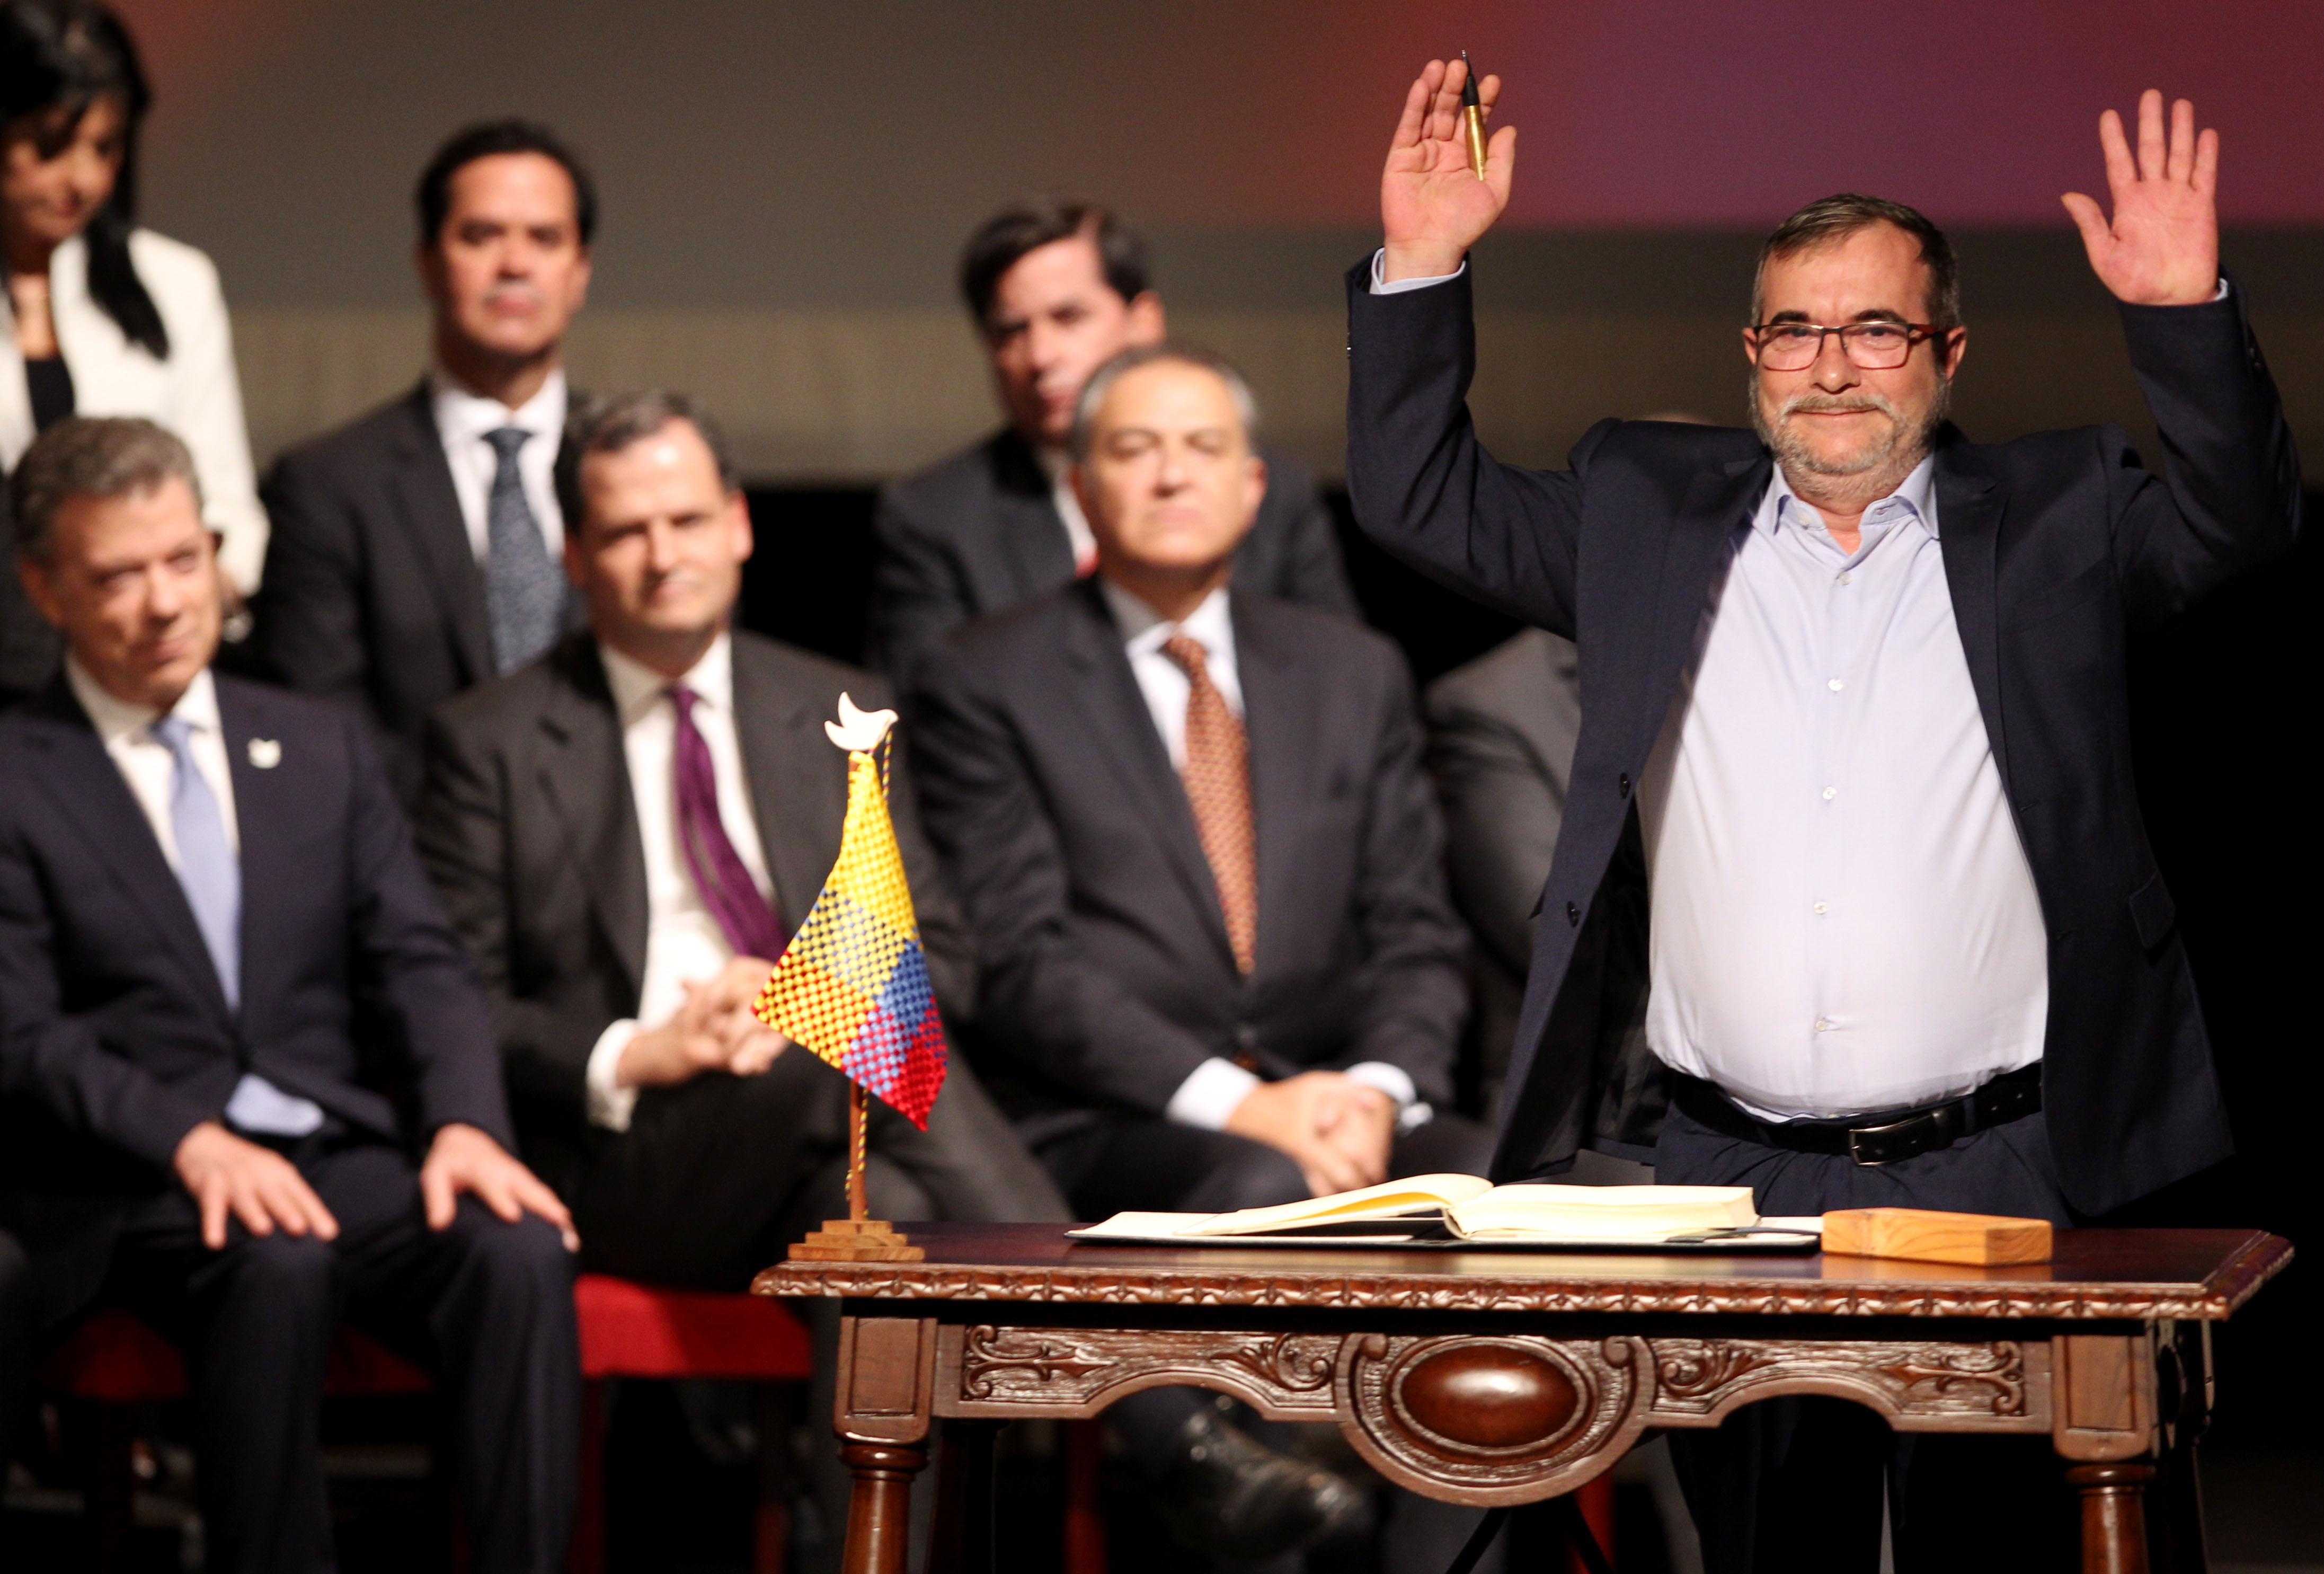 El jefe máximo de las FARC Rodrigo Londoño Echeverry posa luego de firmar el nuevo acuerdo de paz